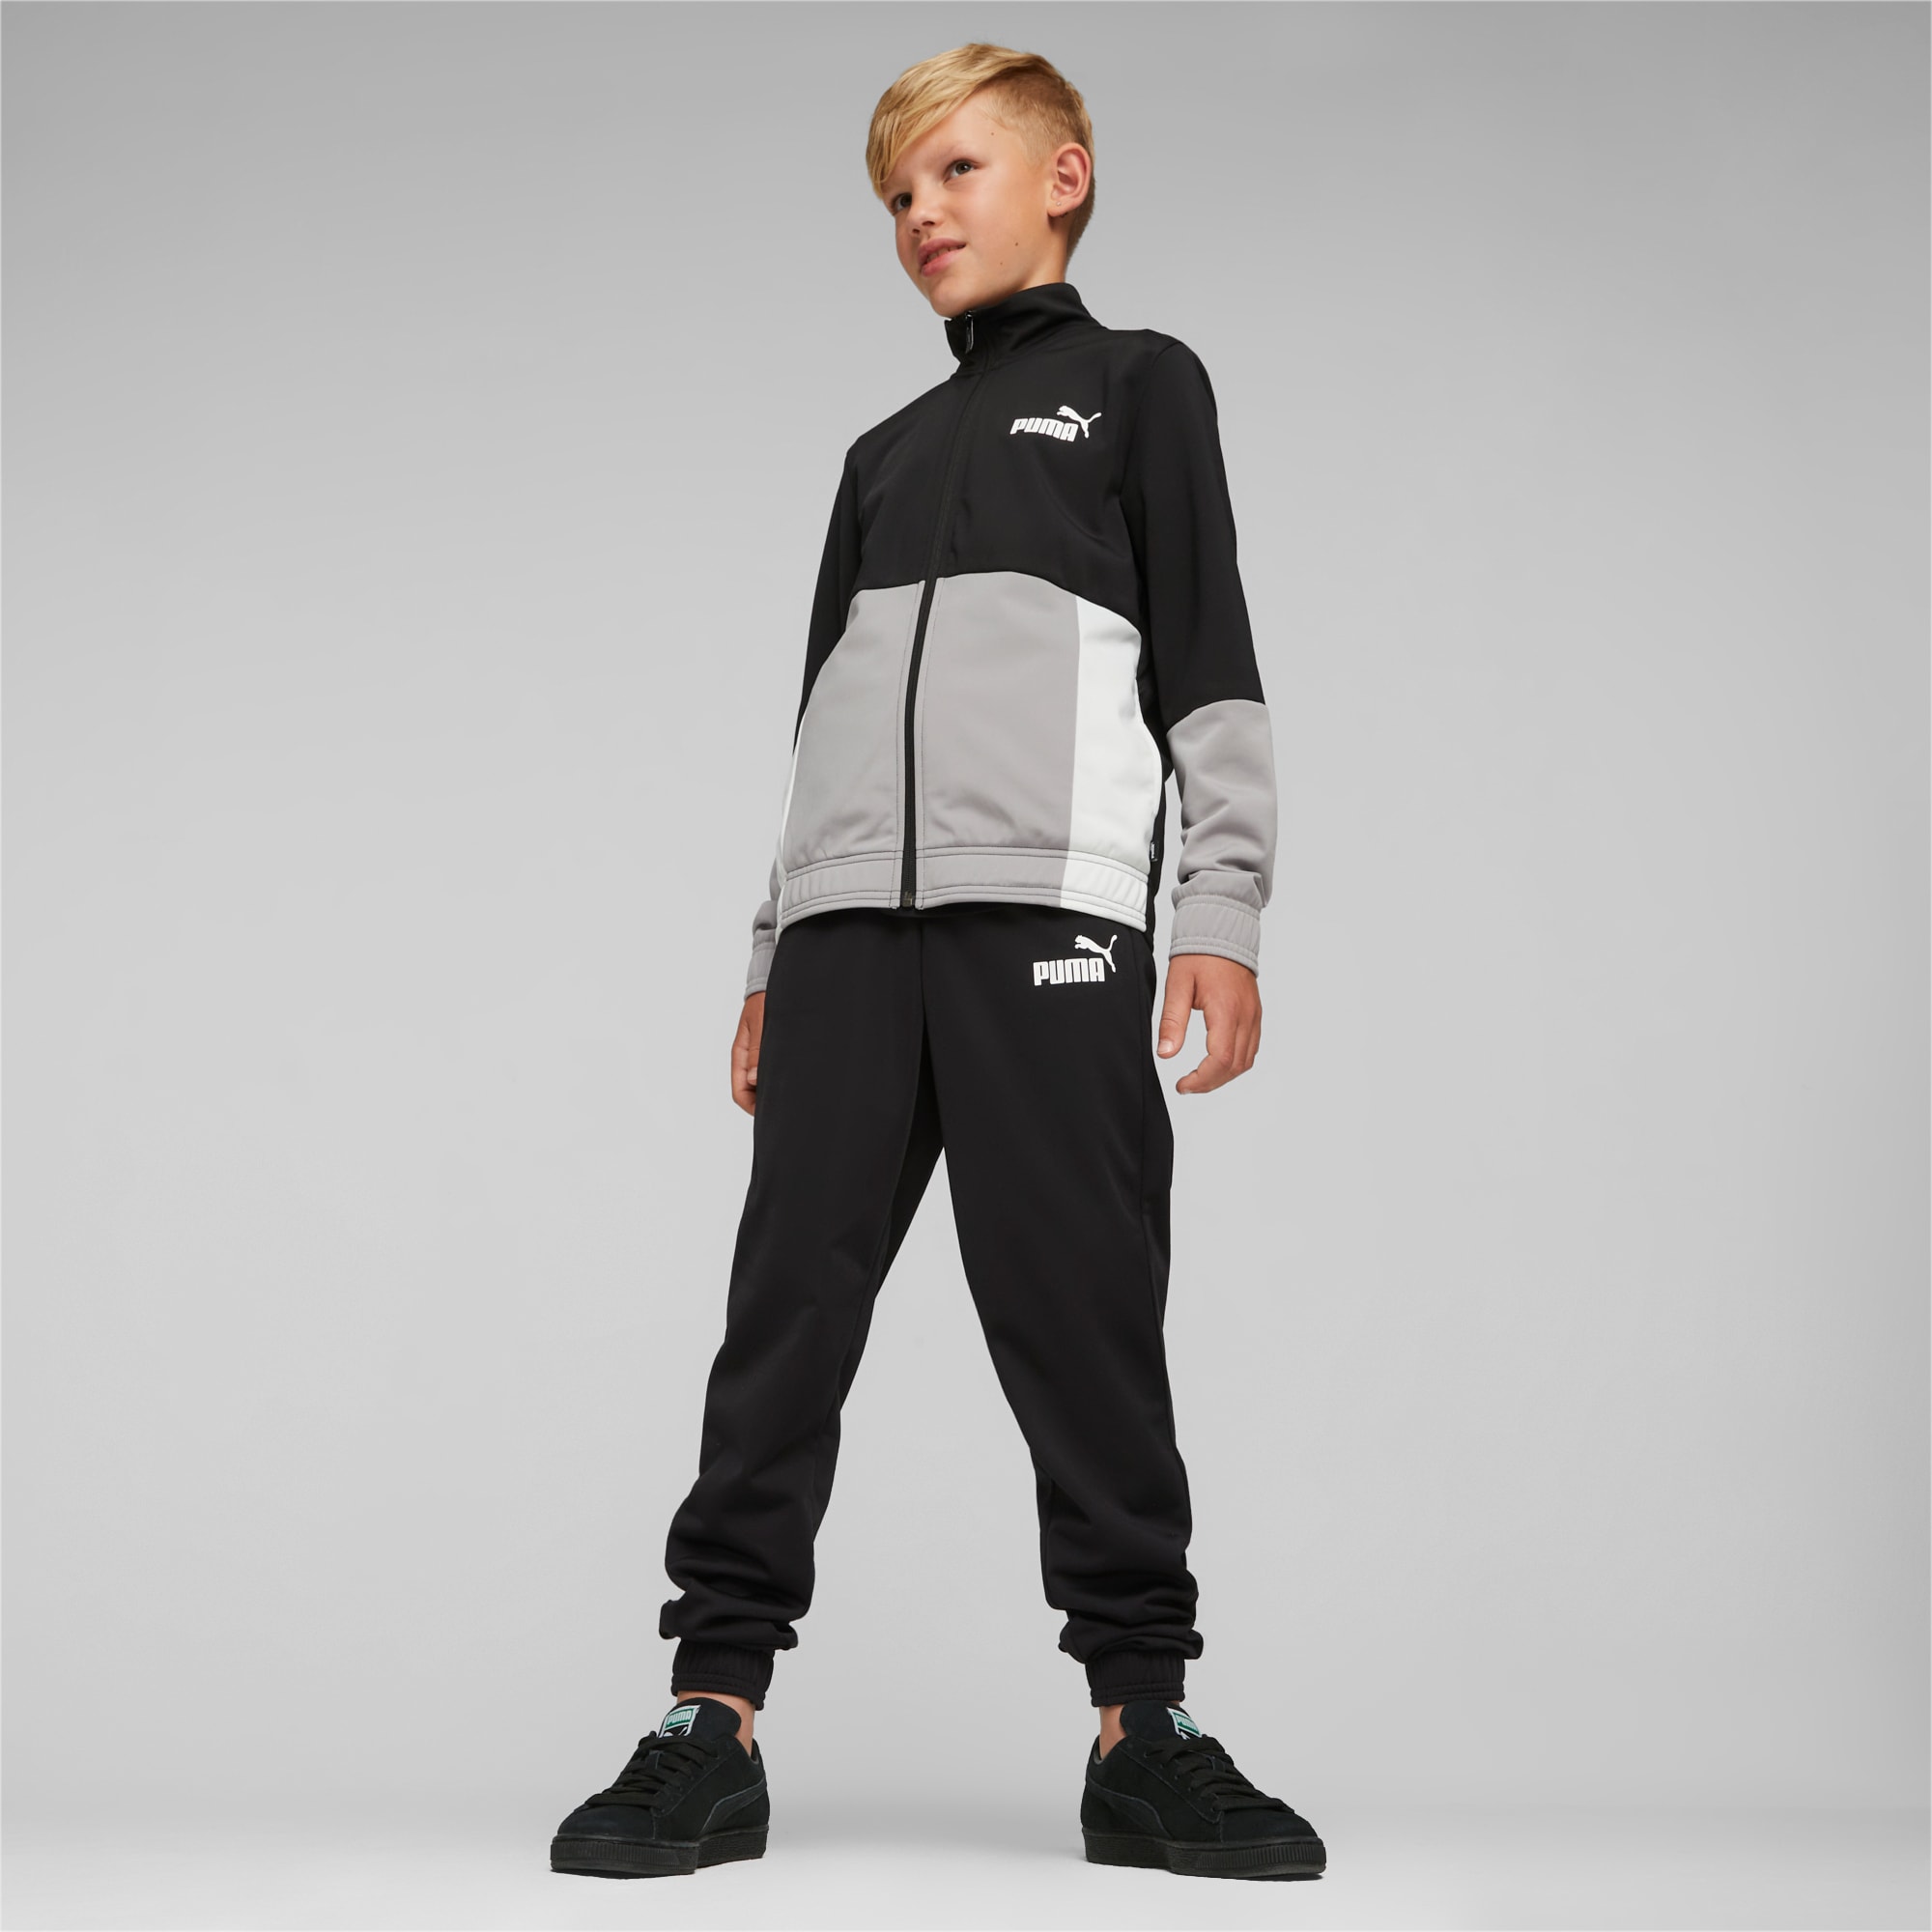 PUMA Colourblock Poly Suit Teenager Für Kinder, Schwarz, Größe: 164, Kleidung